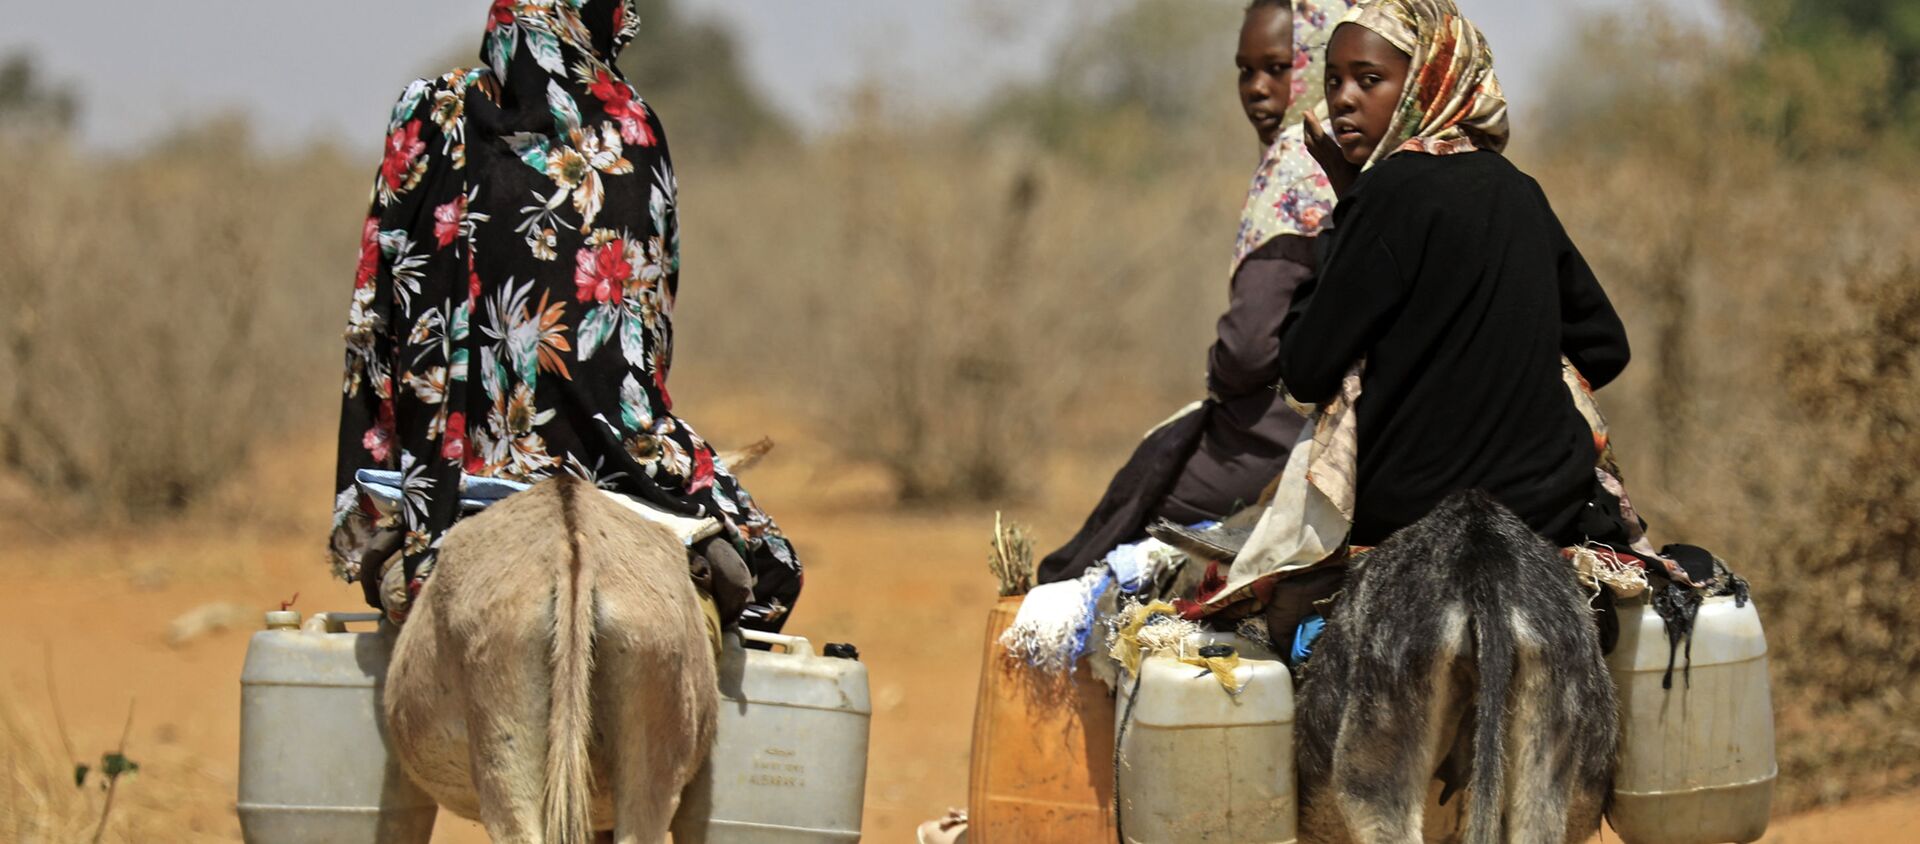  Суданские женщины перевозят воду на осликах в деревне в 85 км к югу от города Ньяла - Sputnik Азербайджан, 1920, 06.02.2021